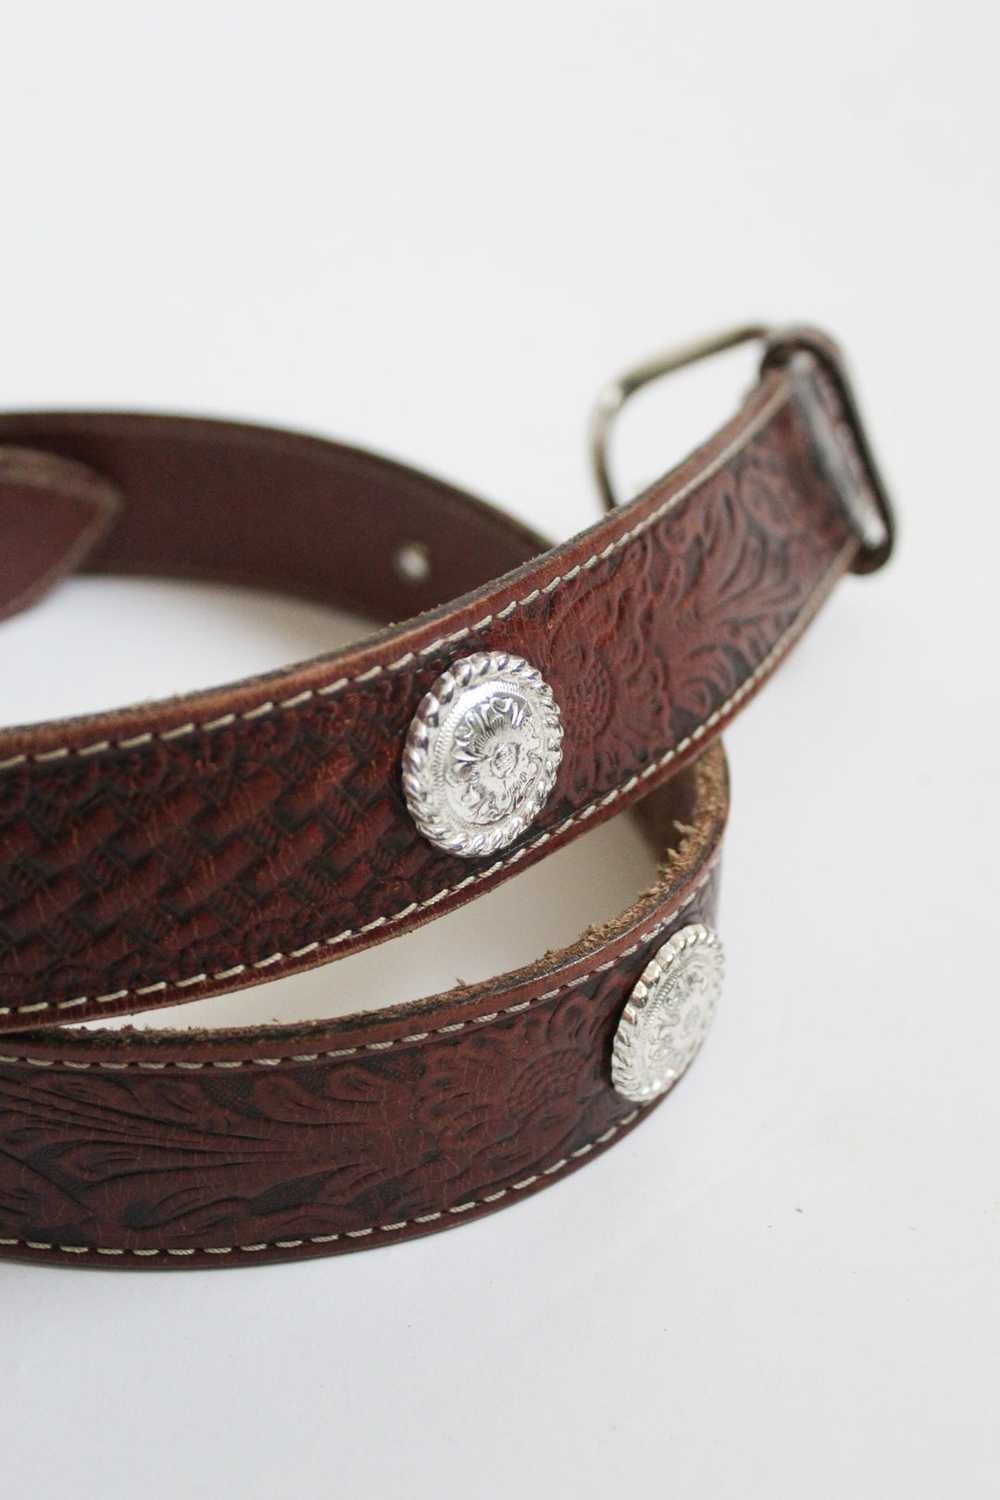 tooled leather belt - image 4